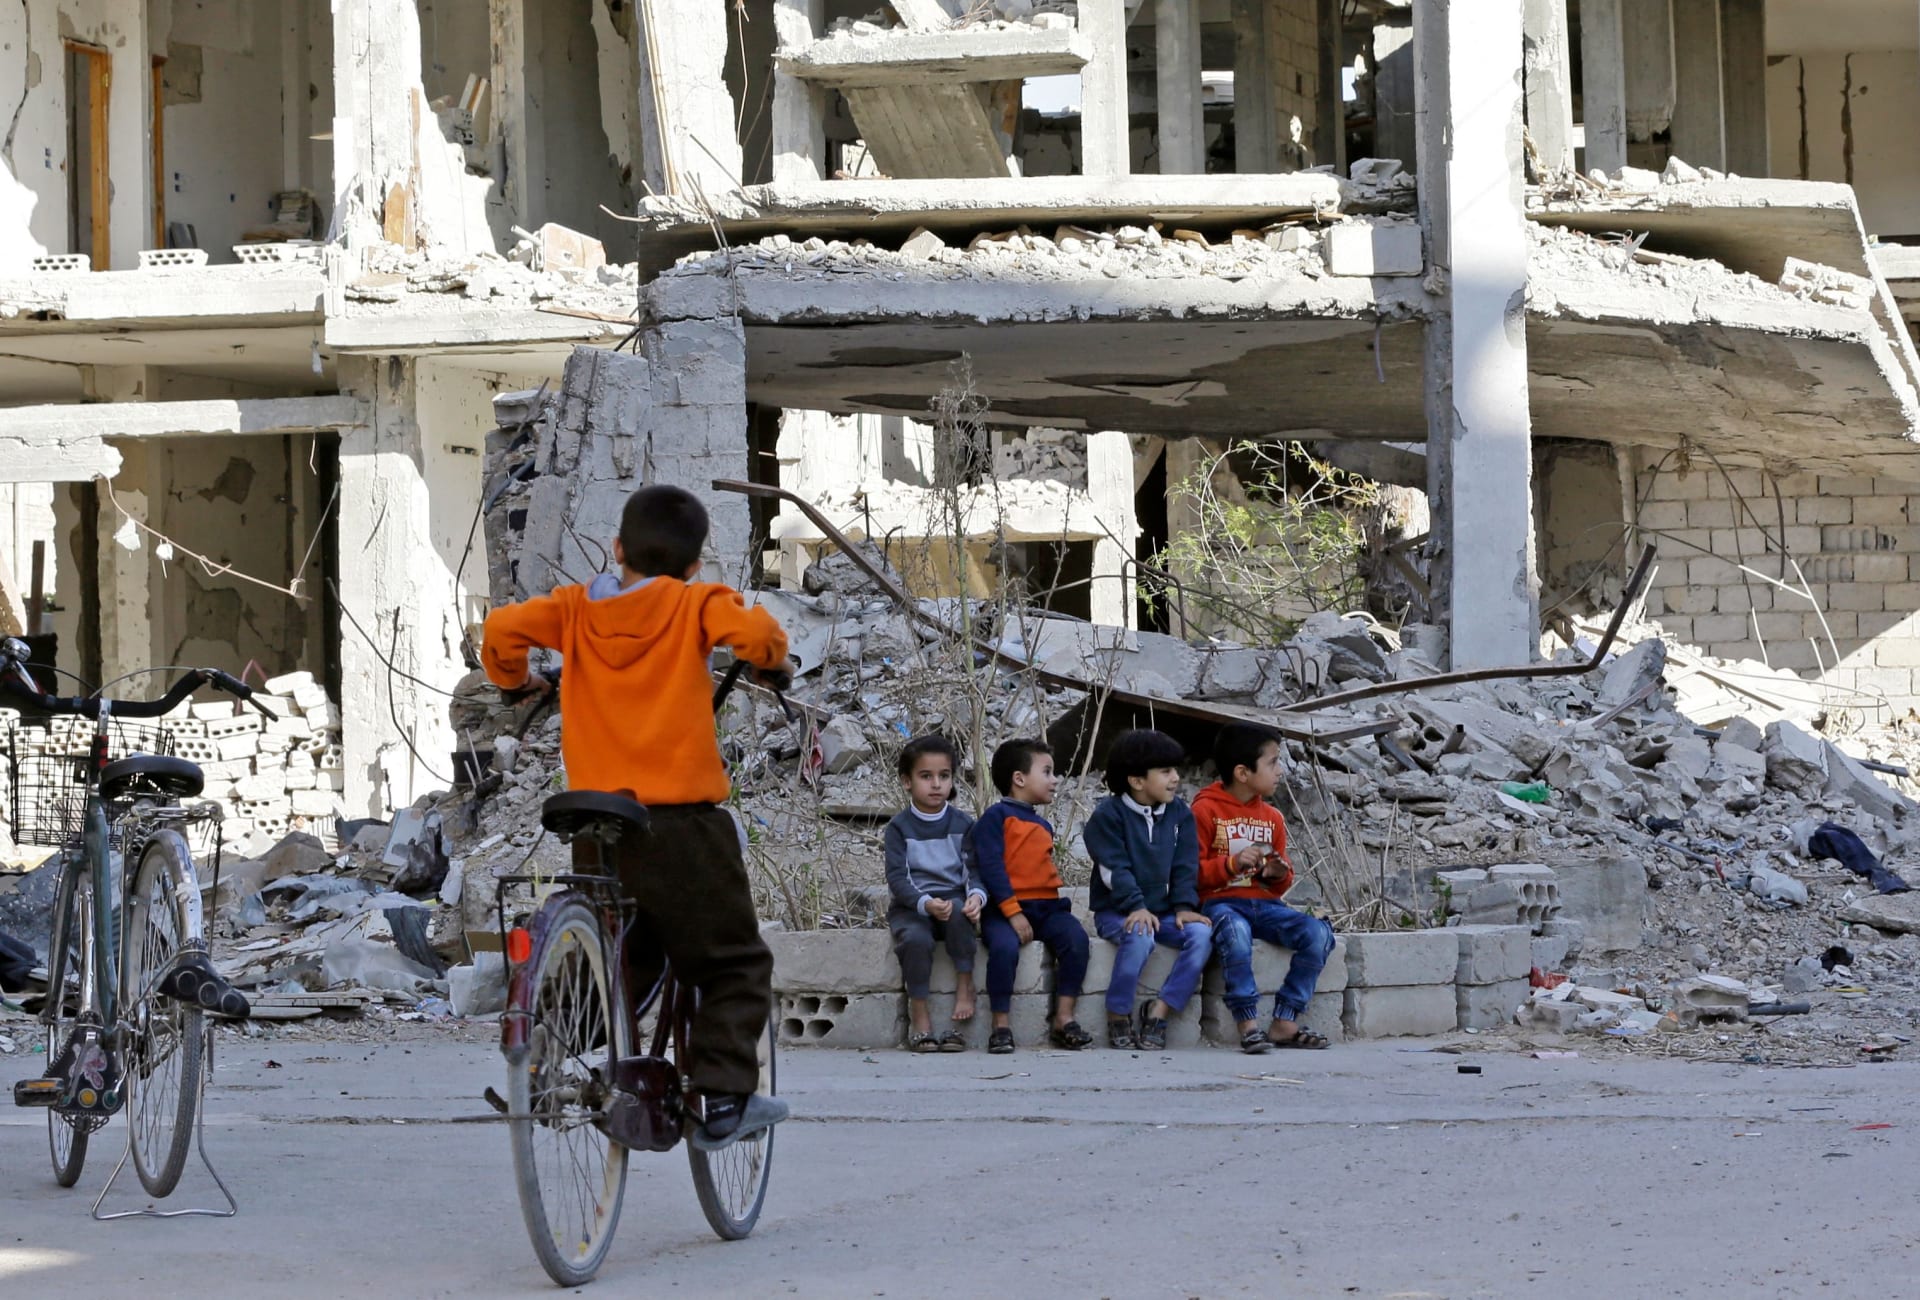 أثناء توجههم لجمع الكمأة.. مقتل 6 سوريين بلغم من مخلفات "داعش" في ريف حمص